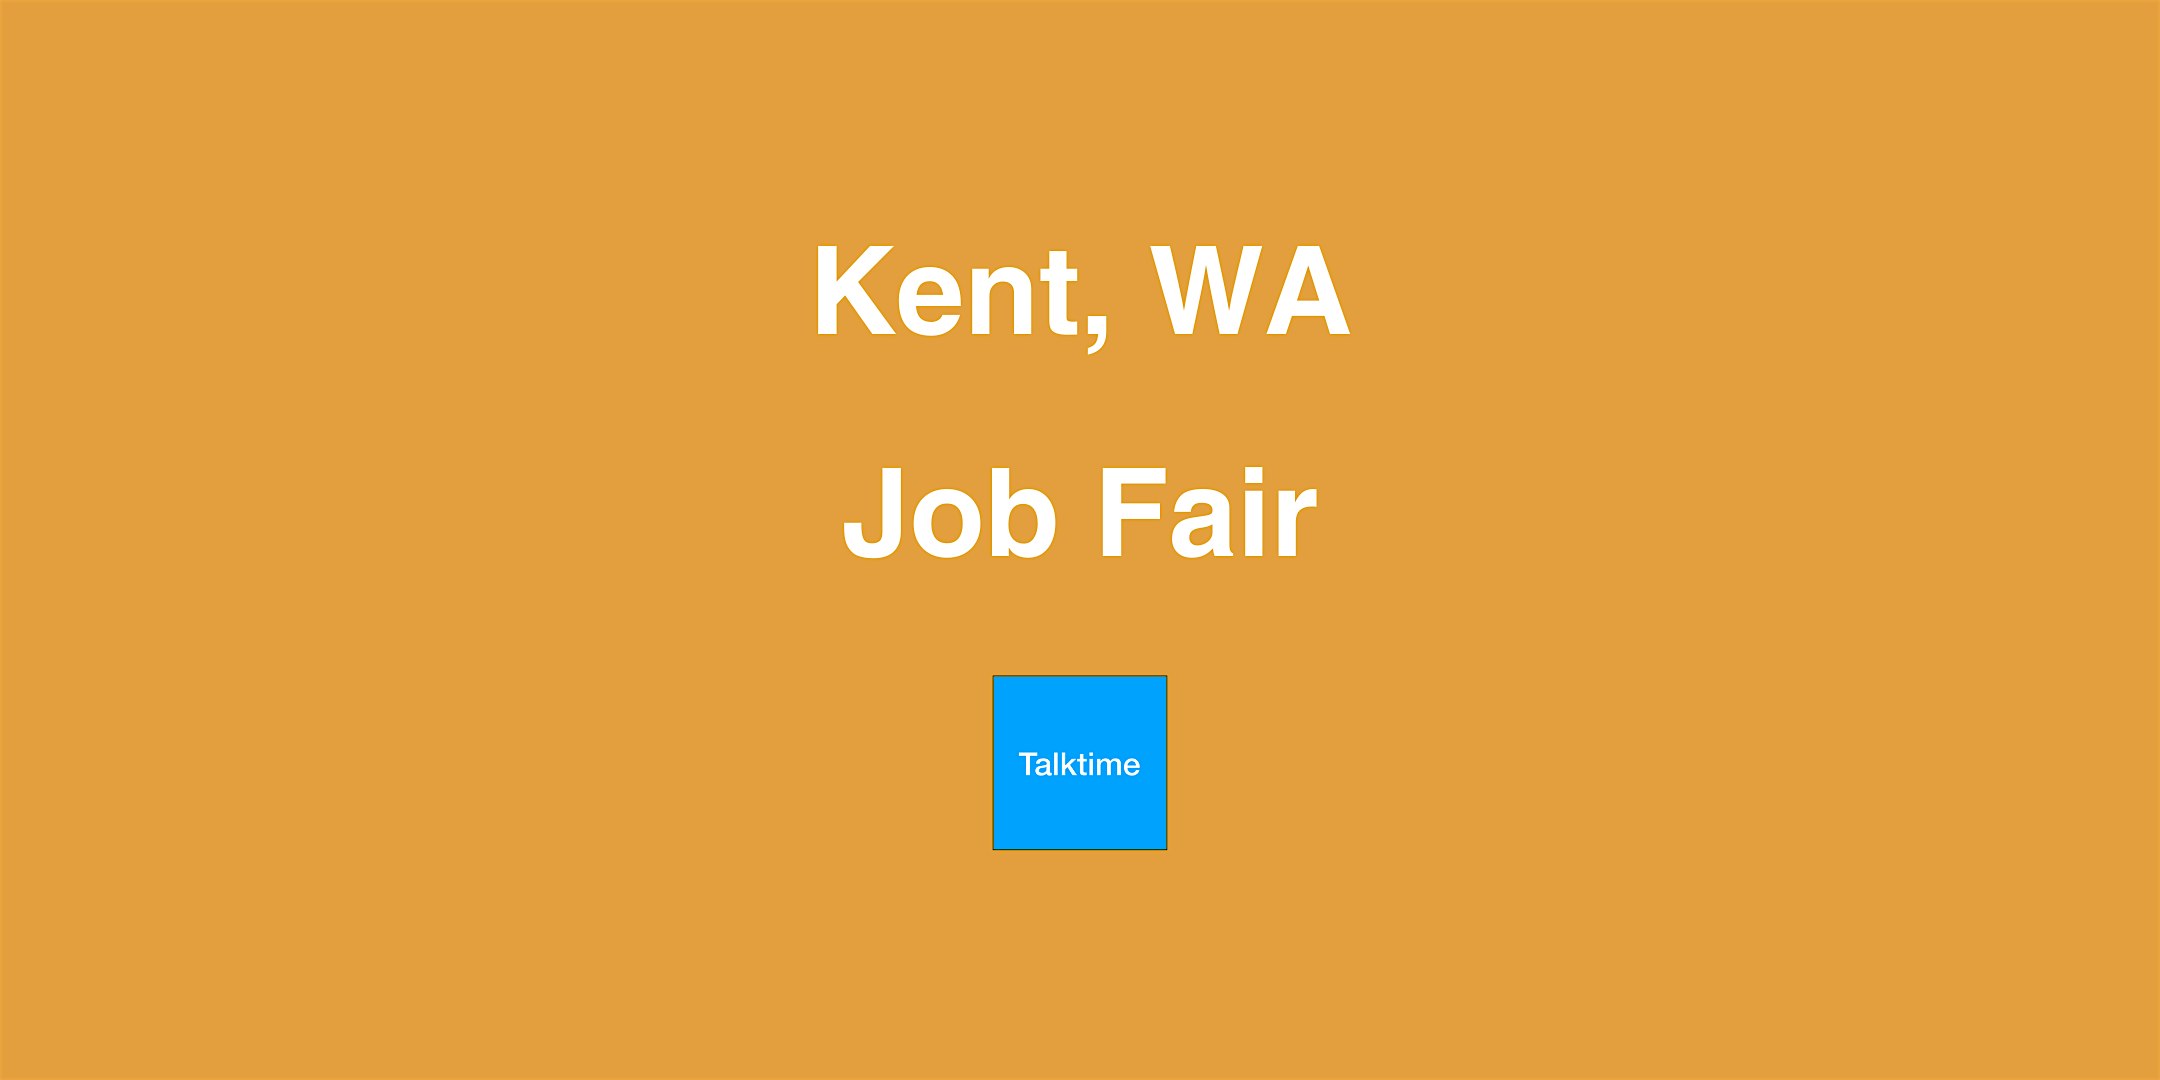 Job Fair - Kent